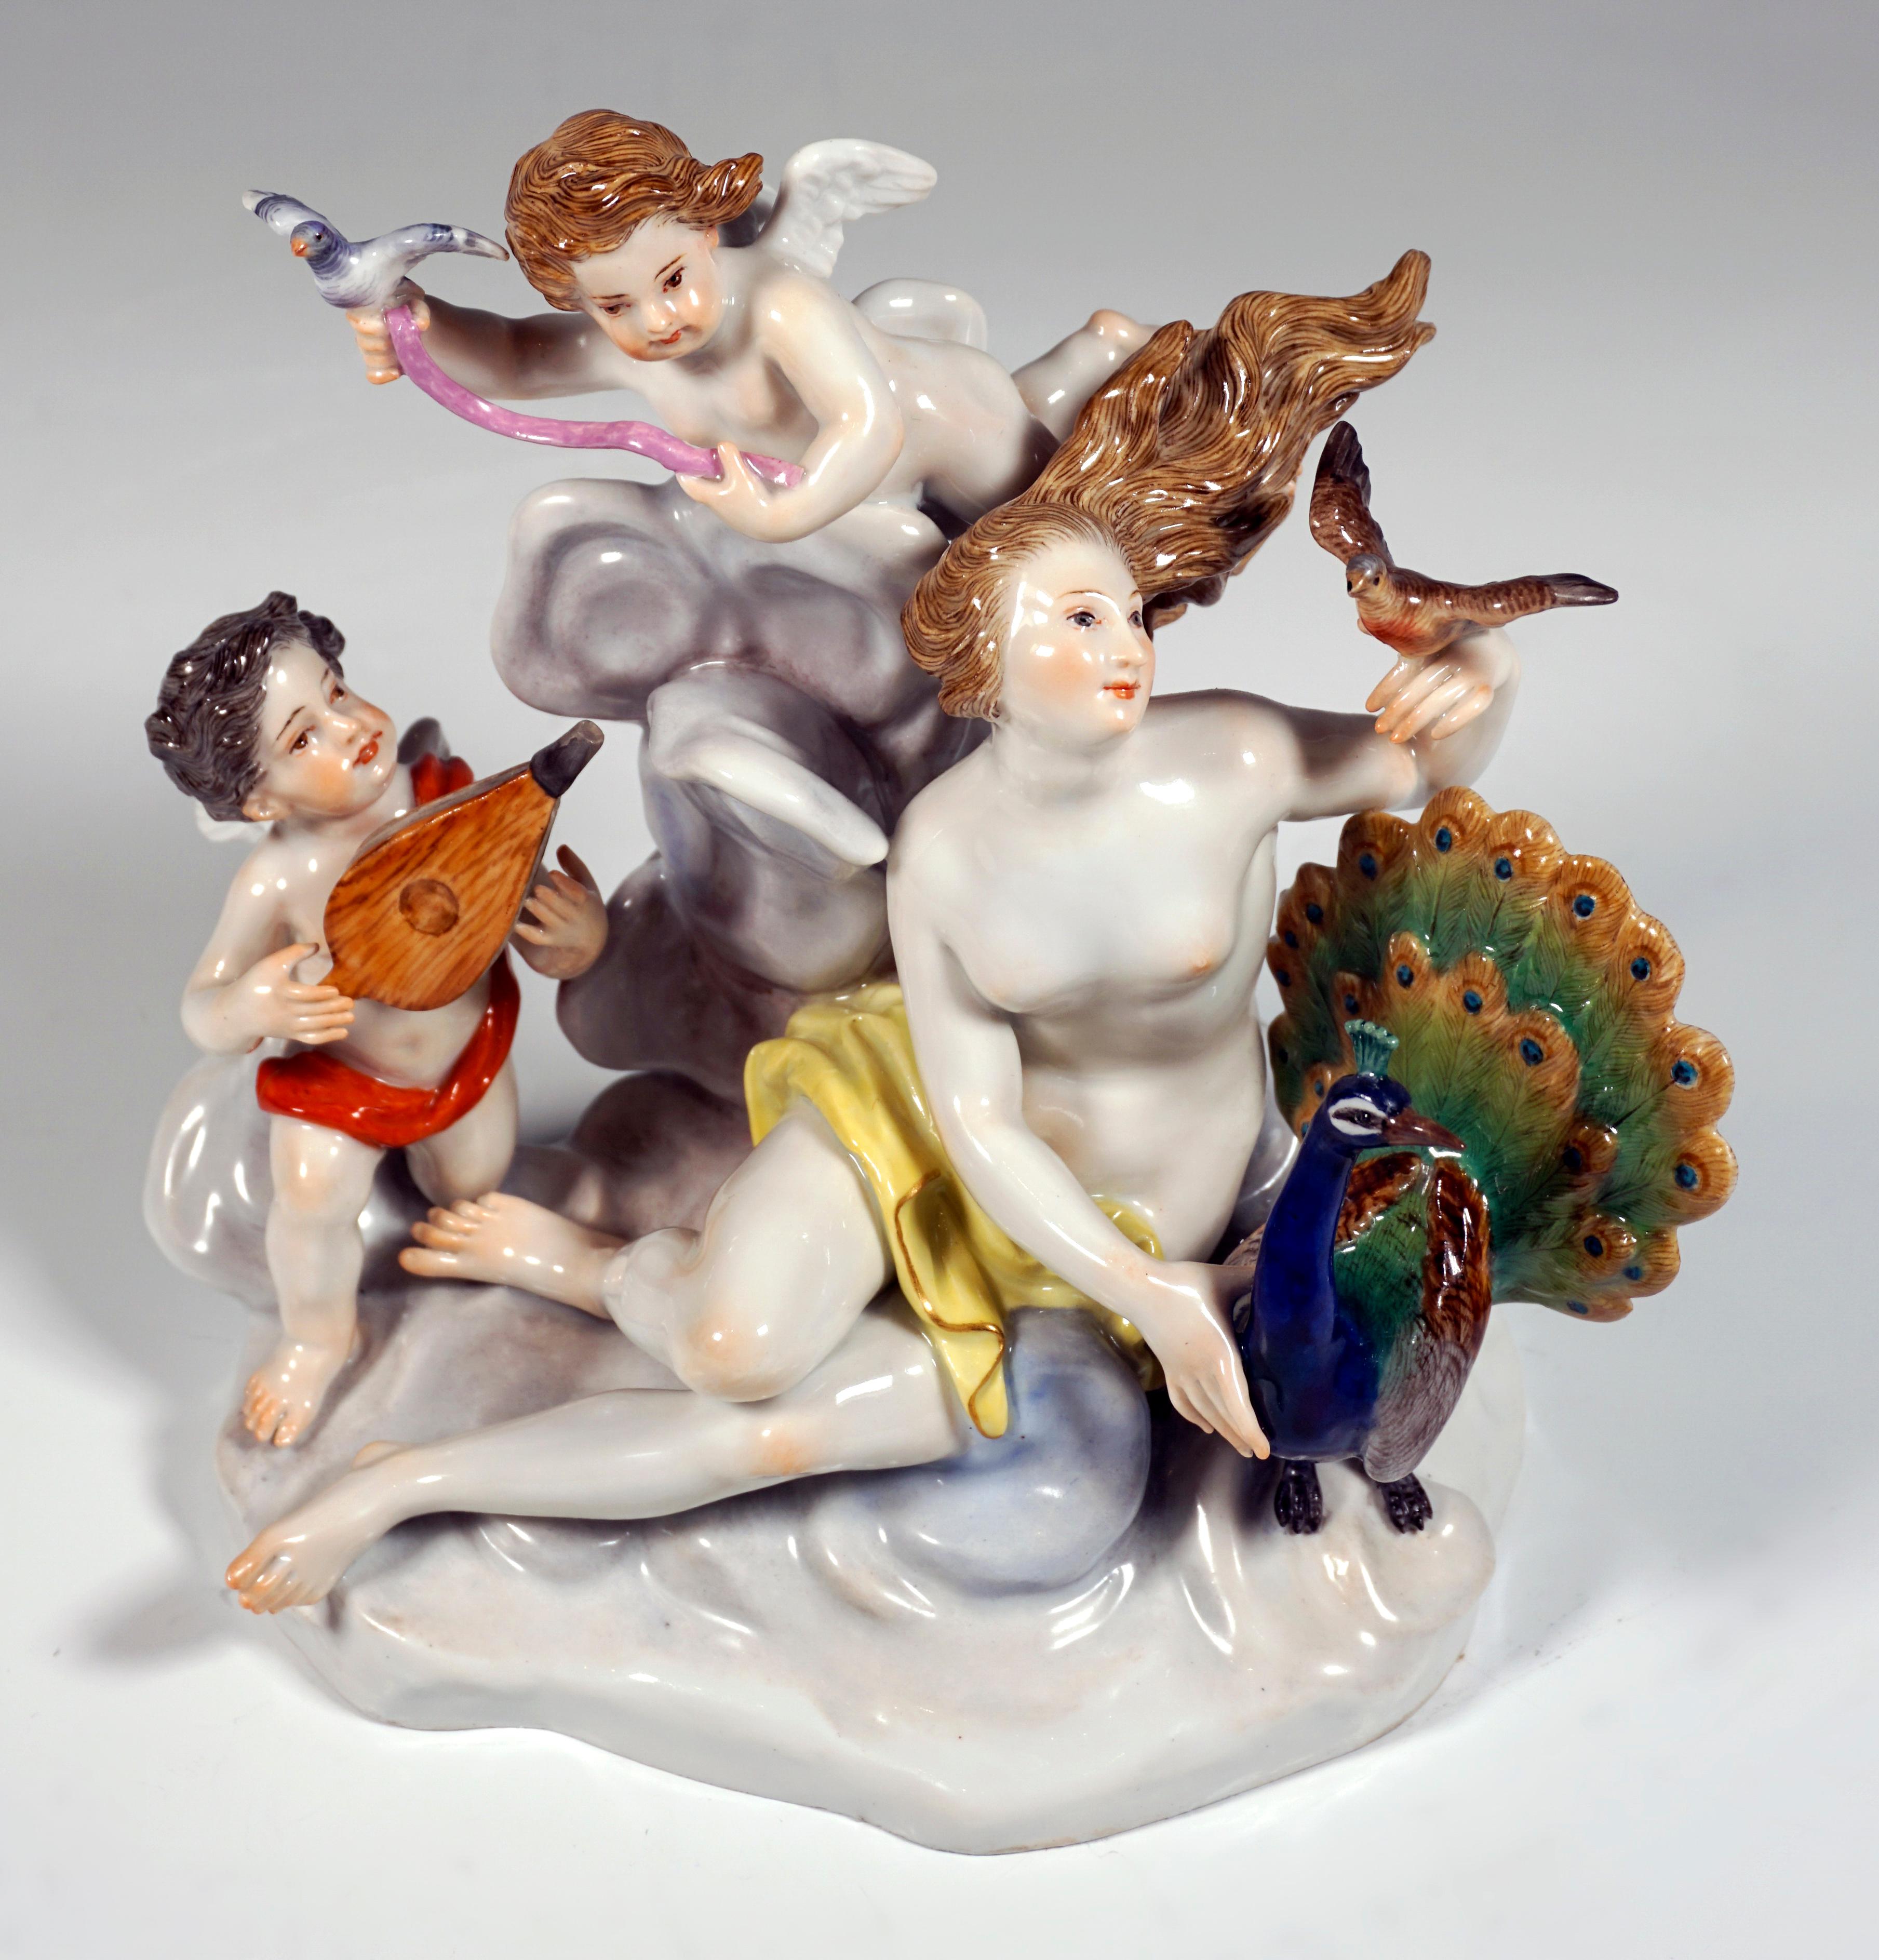 Sehr seltene Meissener Porzellangruppe aus dem 19. Jahrhundert:
Juno, die römische Göttin der Lüfte (griechisch Hera), als junge Frau mit wehendem Haar auf einer Wolke sitzend, nur mit einem Tuch bedeckt, daneben ihr Attribut, der Pfau als